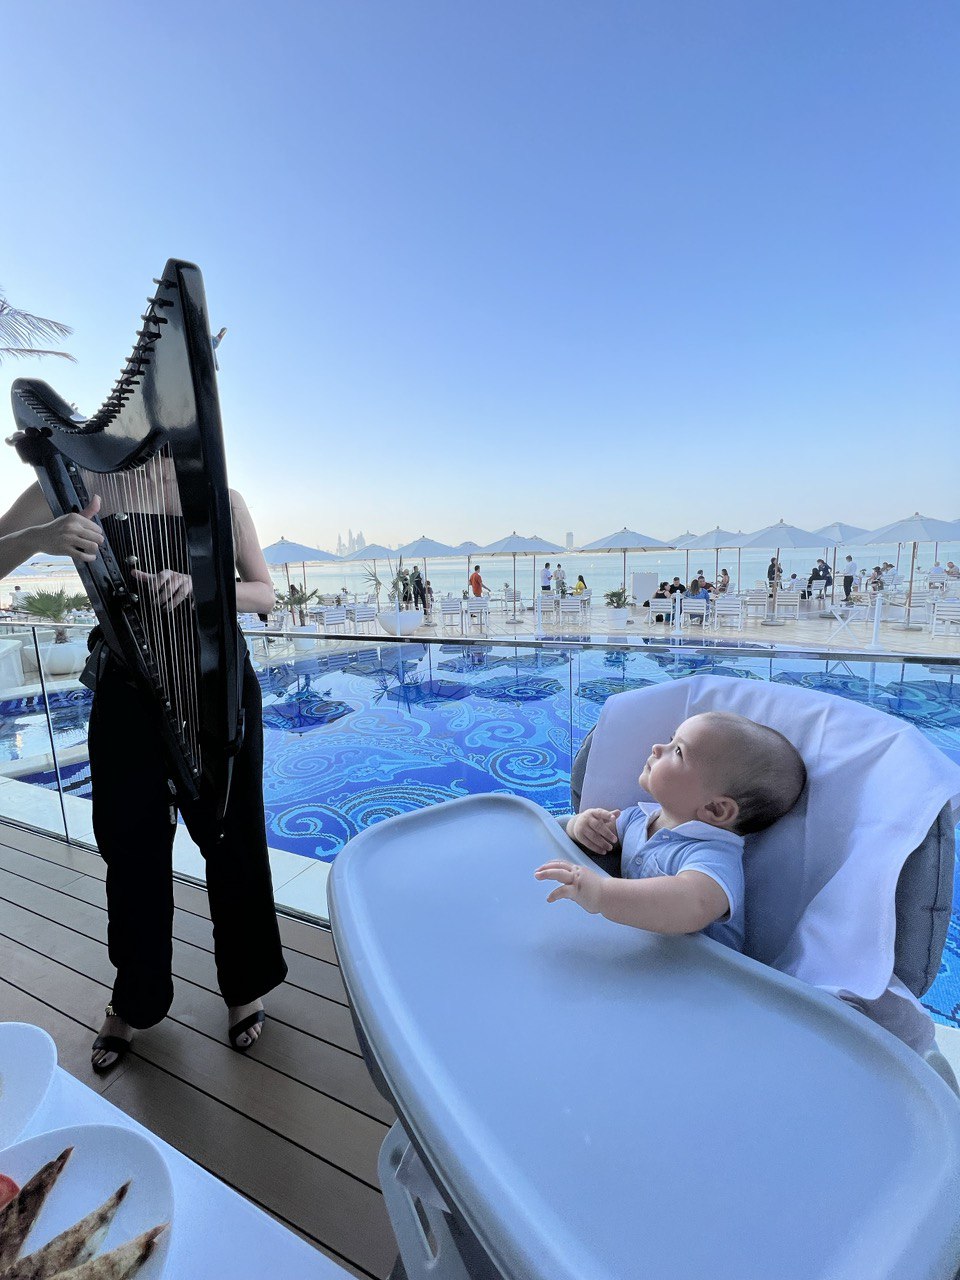 Hotel Guide Ольги Торнер: 7-зірковий відпочинок у Дубаї в знаменитому готелі Burj Al Arab